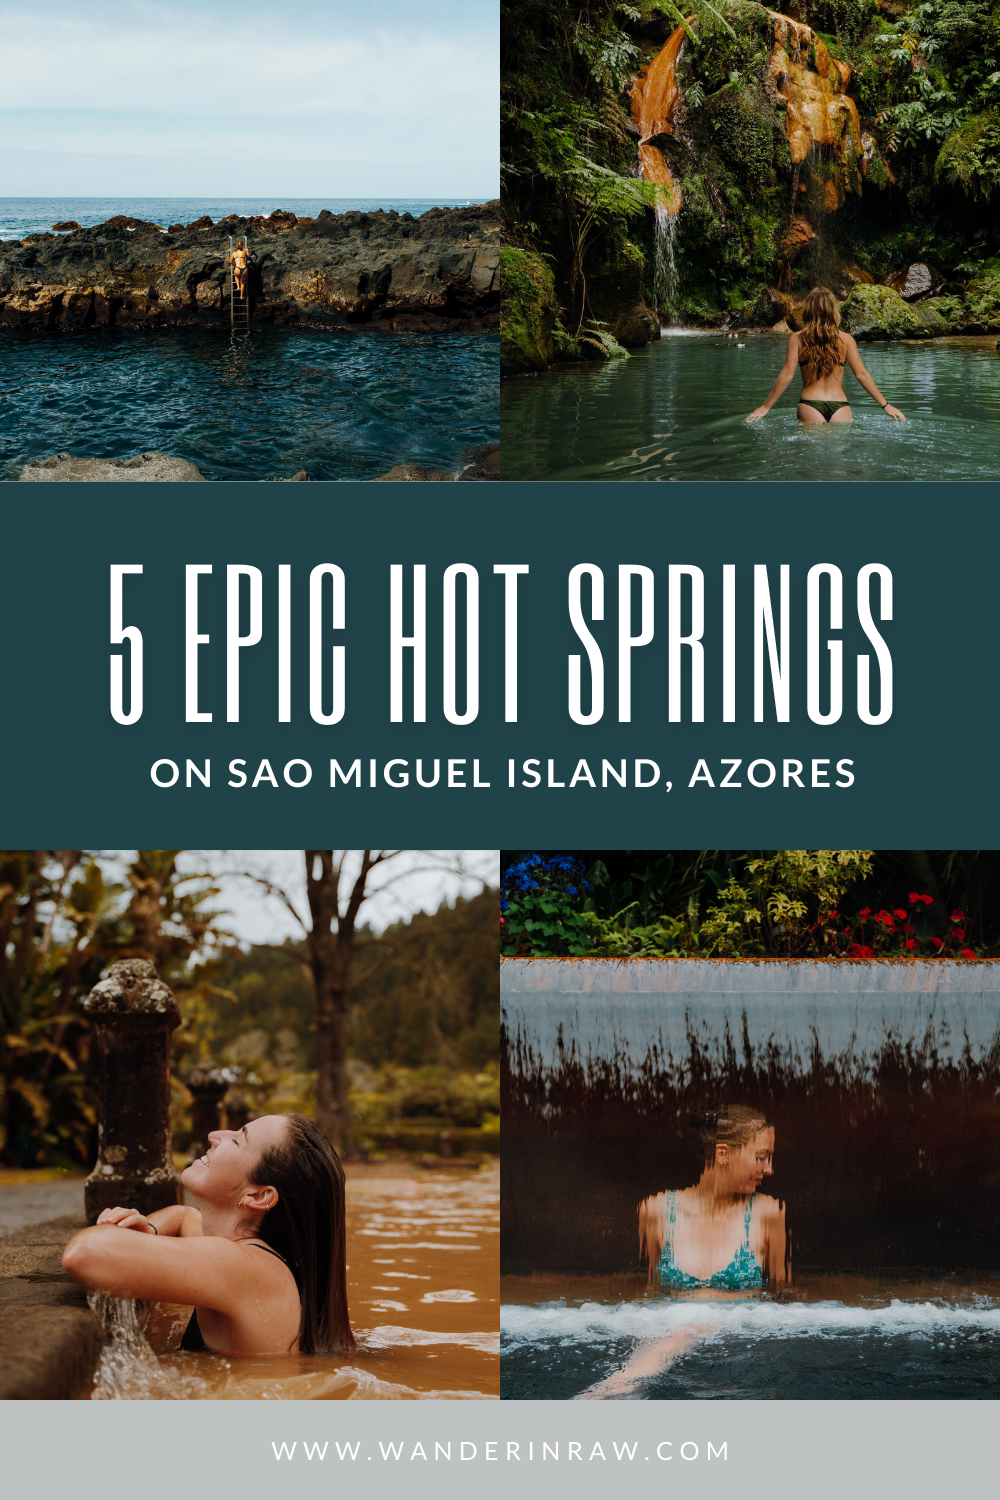 5 São Miguel, Açores Hot Springs to Get Your Soak On